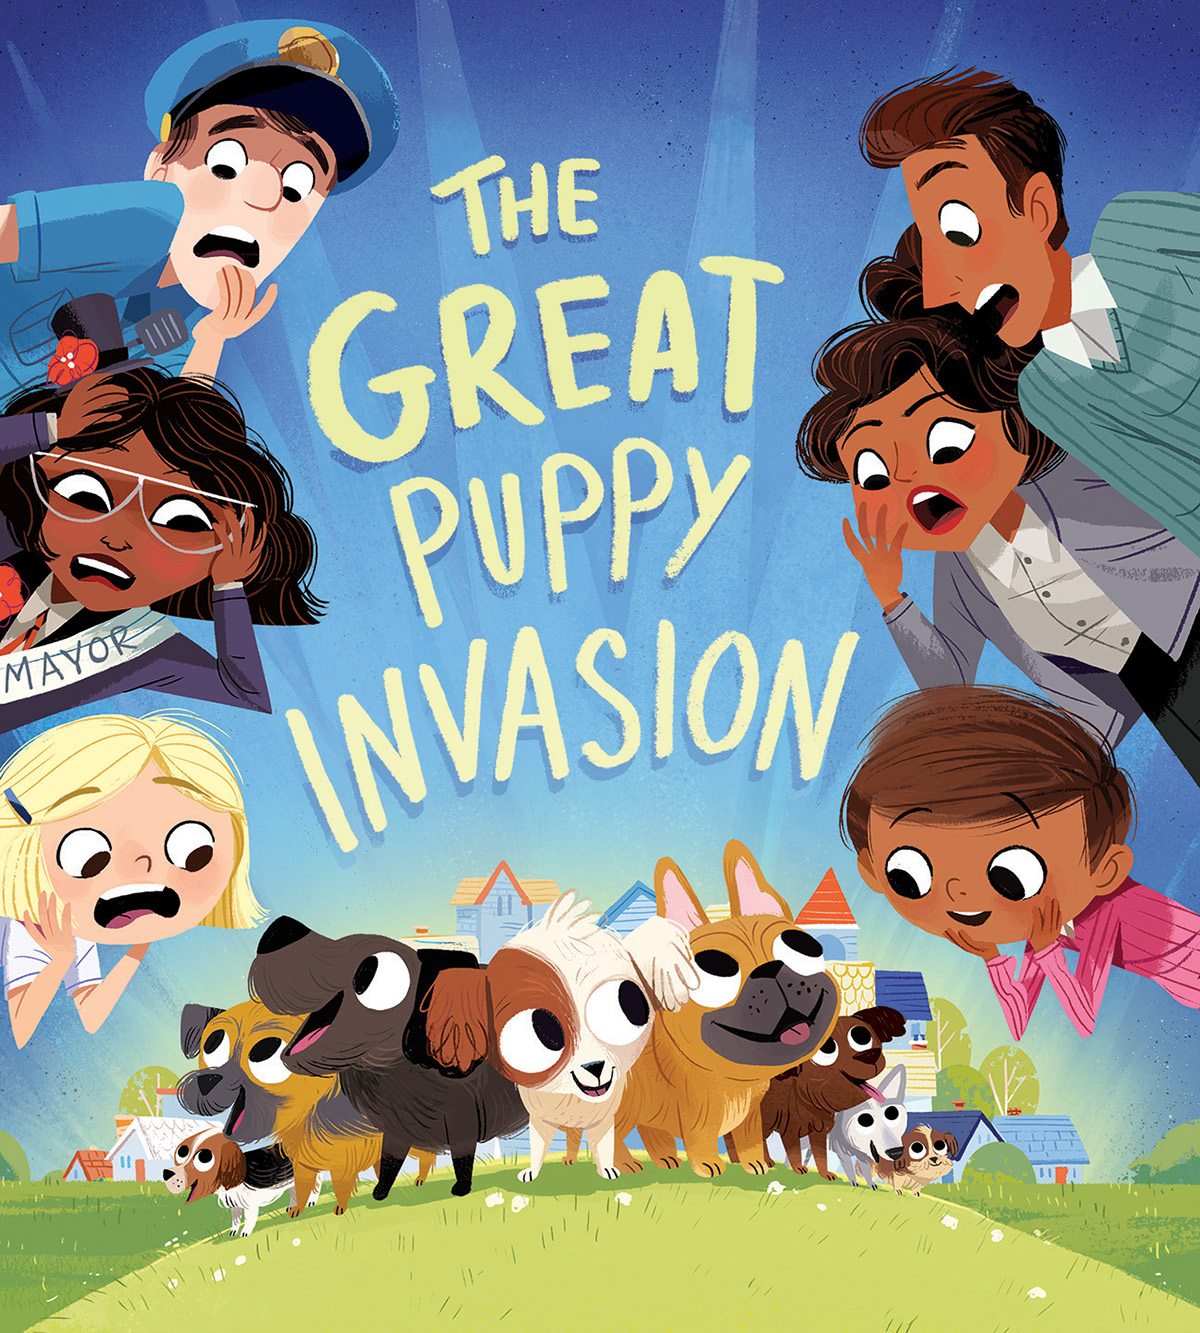 puppies puppy dog dogs invasion people hysteria afraid kid children's book